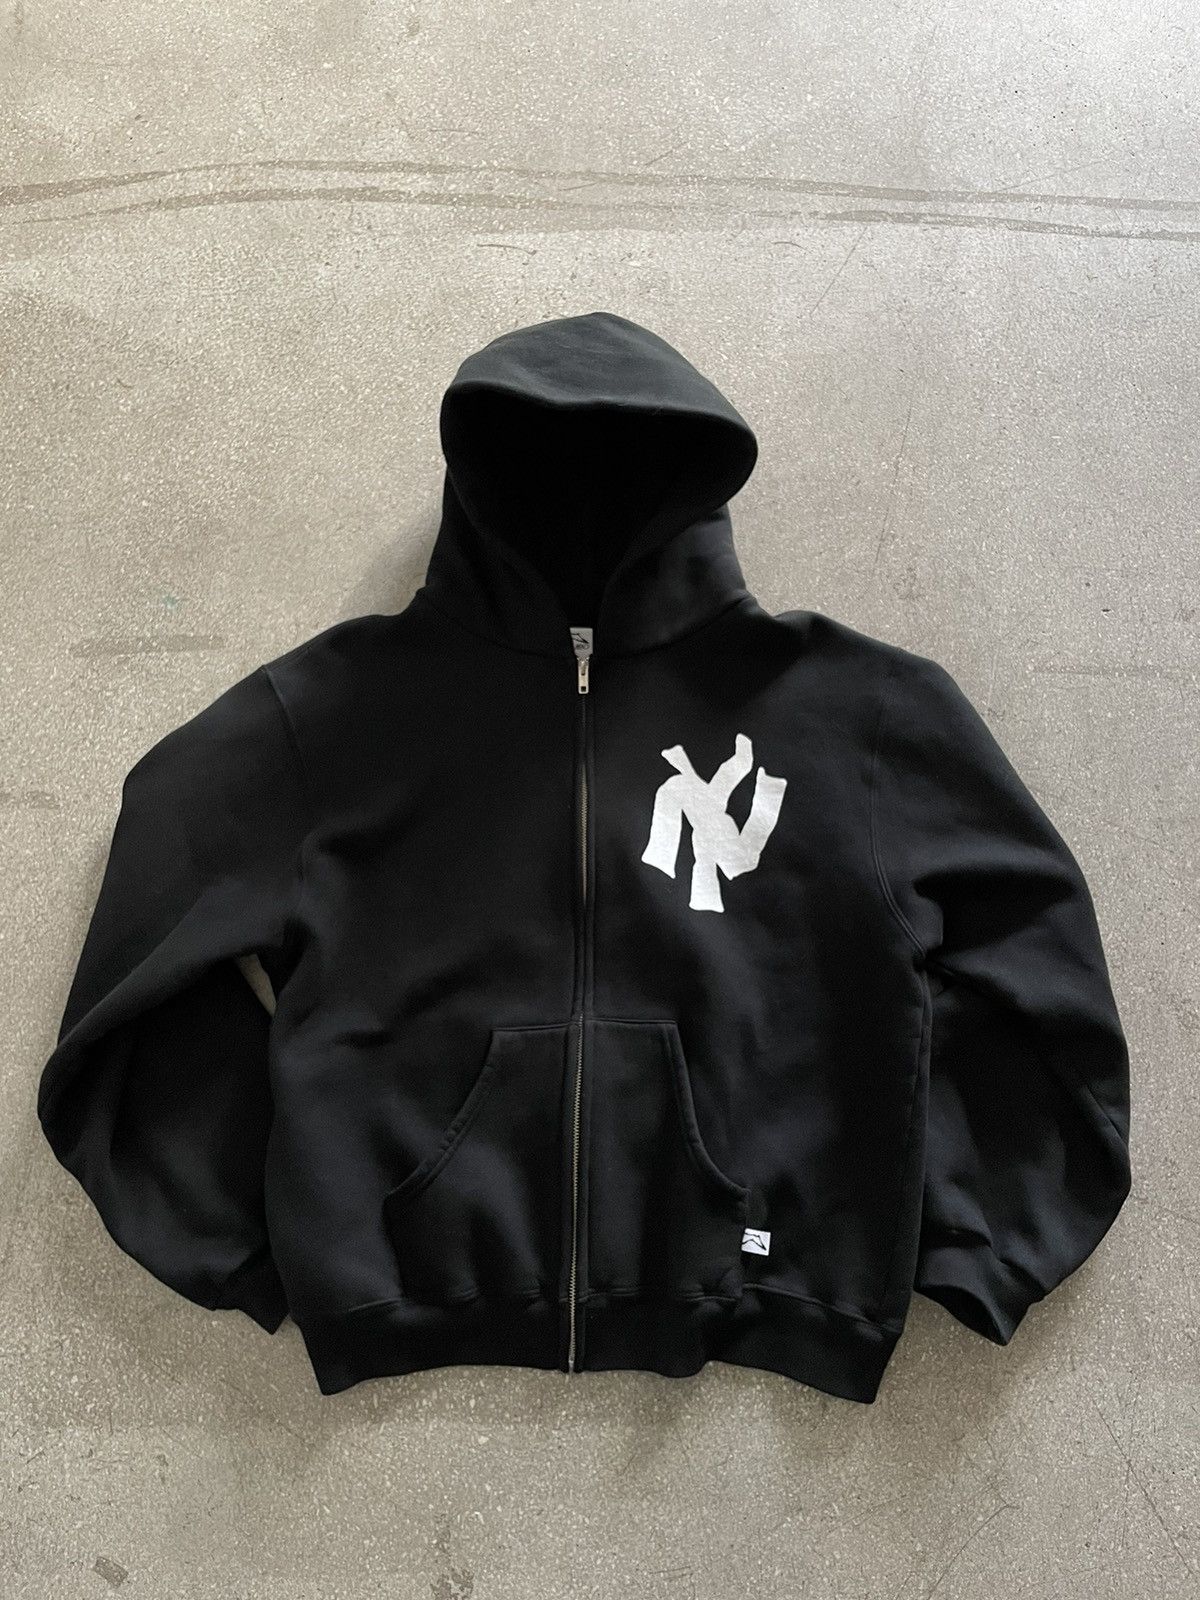 Vintage Akimbo Club NY New York zip up hoodie | Grailed